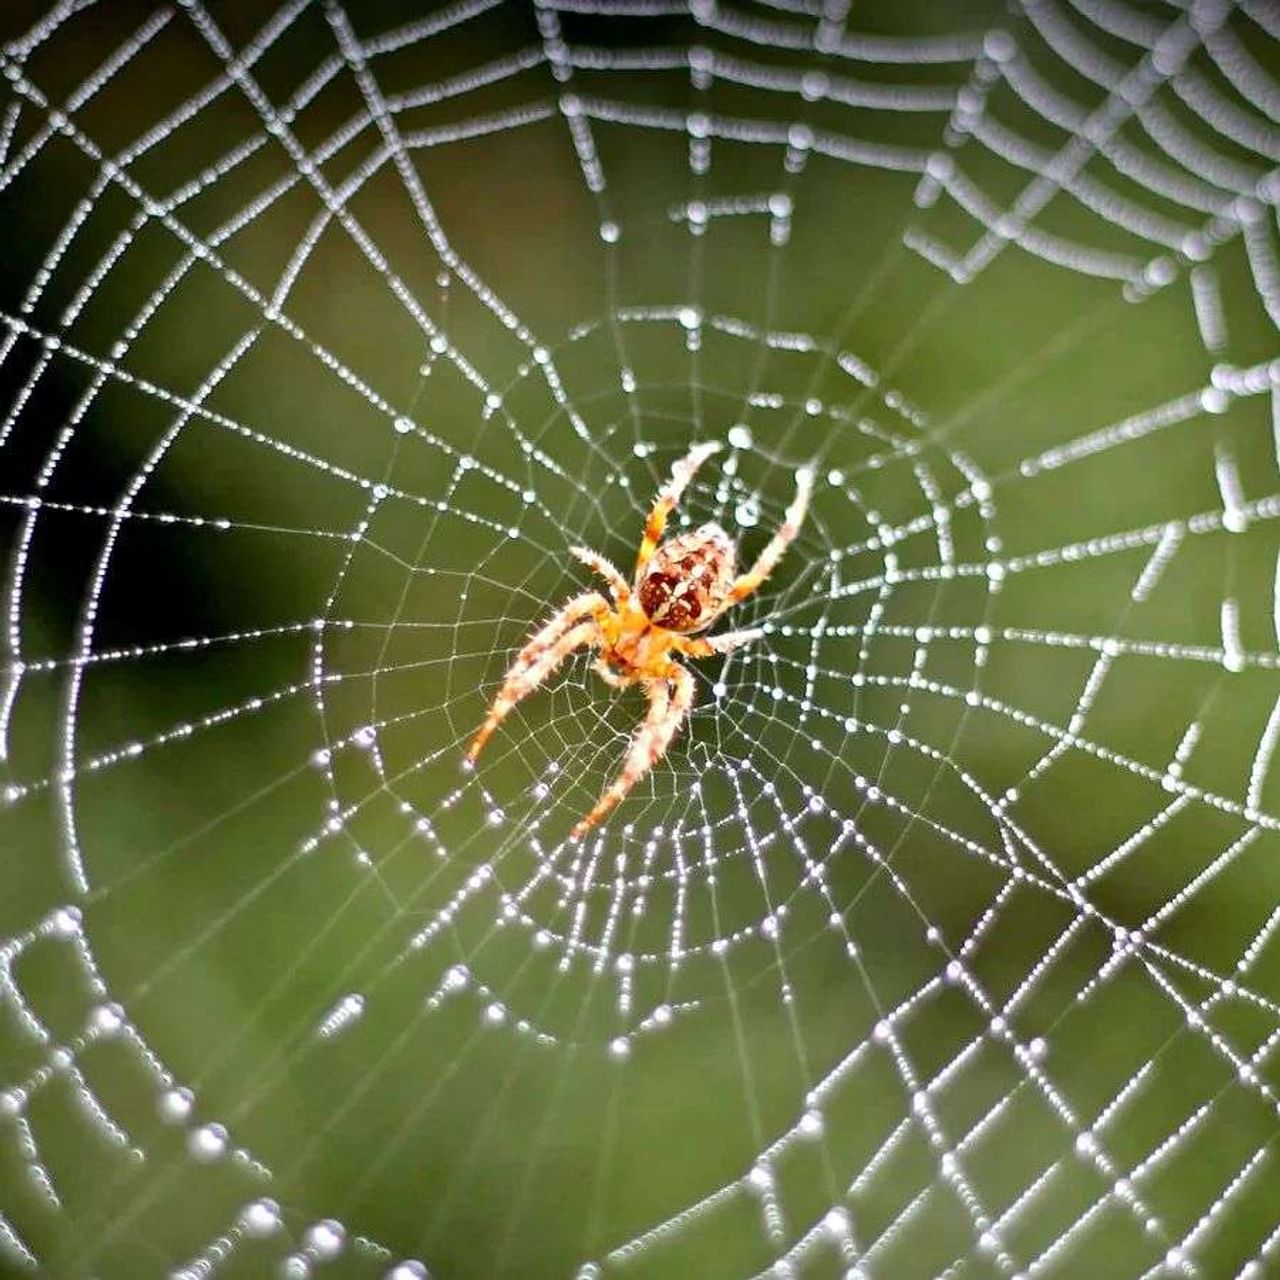 મોટા ભાગના લોકો સમજે છે કે કરોળિયો (Spider) જીવંત રહેવા માટે તેના જાળાનો (Web) ઉપયોગ કરે છે, પરંતુ તે તેની મદદથી પોતાને સજાગ પણ રાખે છે. આ નેટની મદદથી અવાજો તેમના સુધી પહોંચે છે. ન્યૂયોર્કની બિંગહેમ્પટન યુનિવર્સિટીના (Binghampton University) સંશોધકોએ તેમના તાજેતરના સંશોધનમાં આ દાવો કર્યો છે. સંશોધકોનું કહેવું છે કે, સ્પાઈડર પોતાના જાળાની મદદથી તેને નુકસાન કરનારાઓથી પણ પોતાને બચાવે છે. જાણો, કરોળિયો આ કેવી રીતે કરે છે...